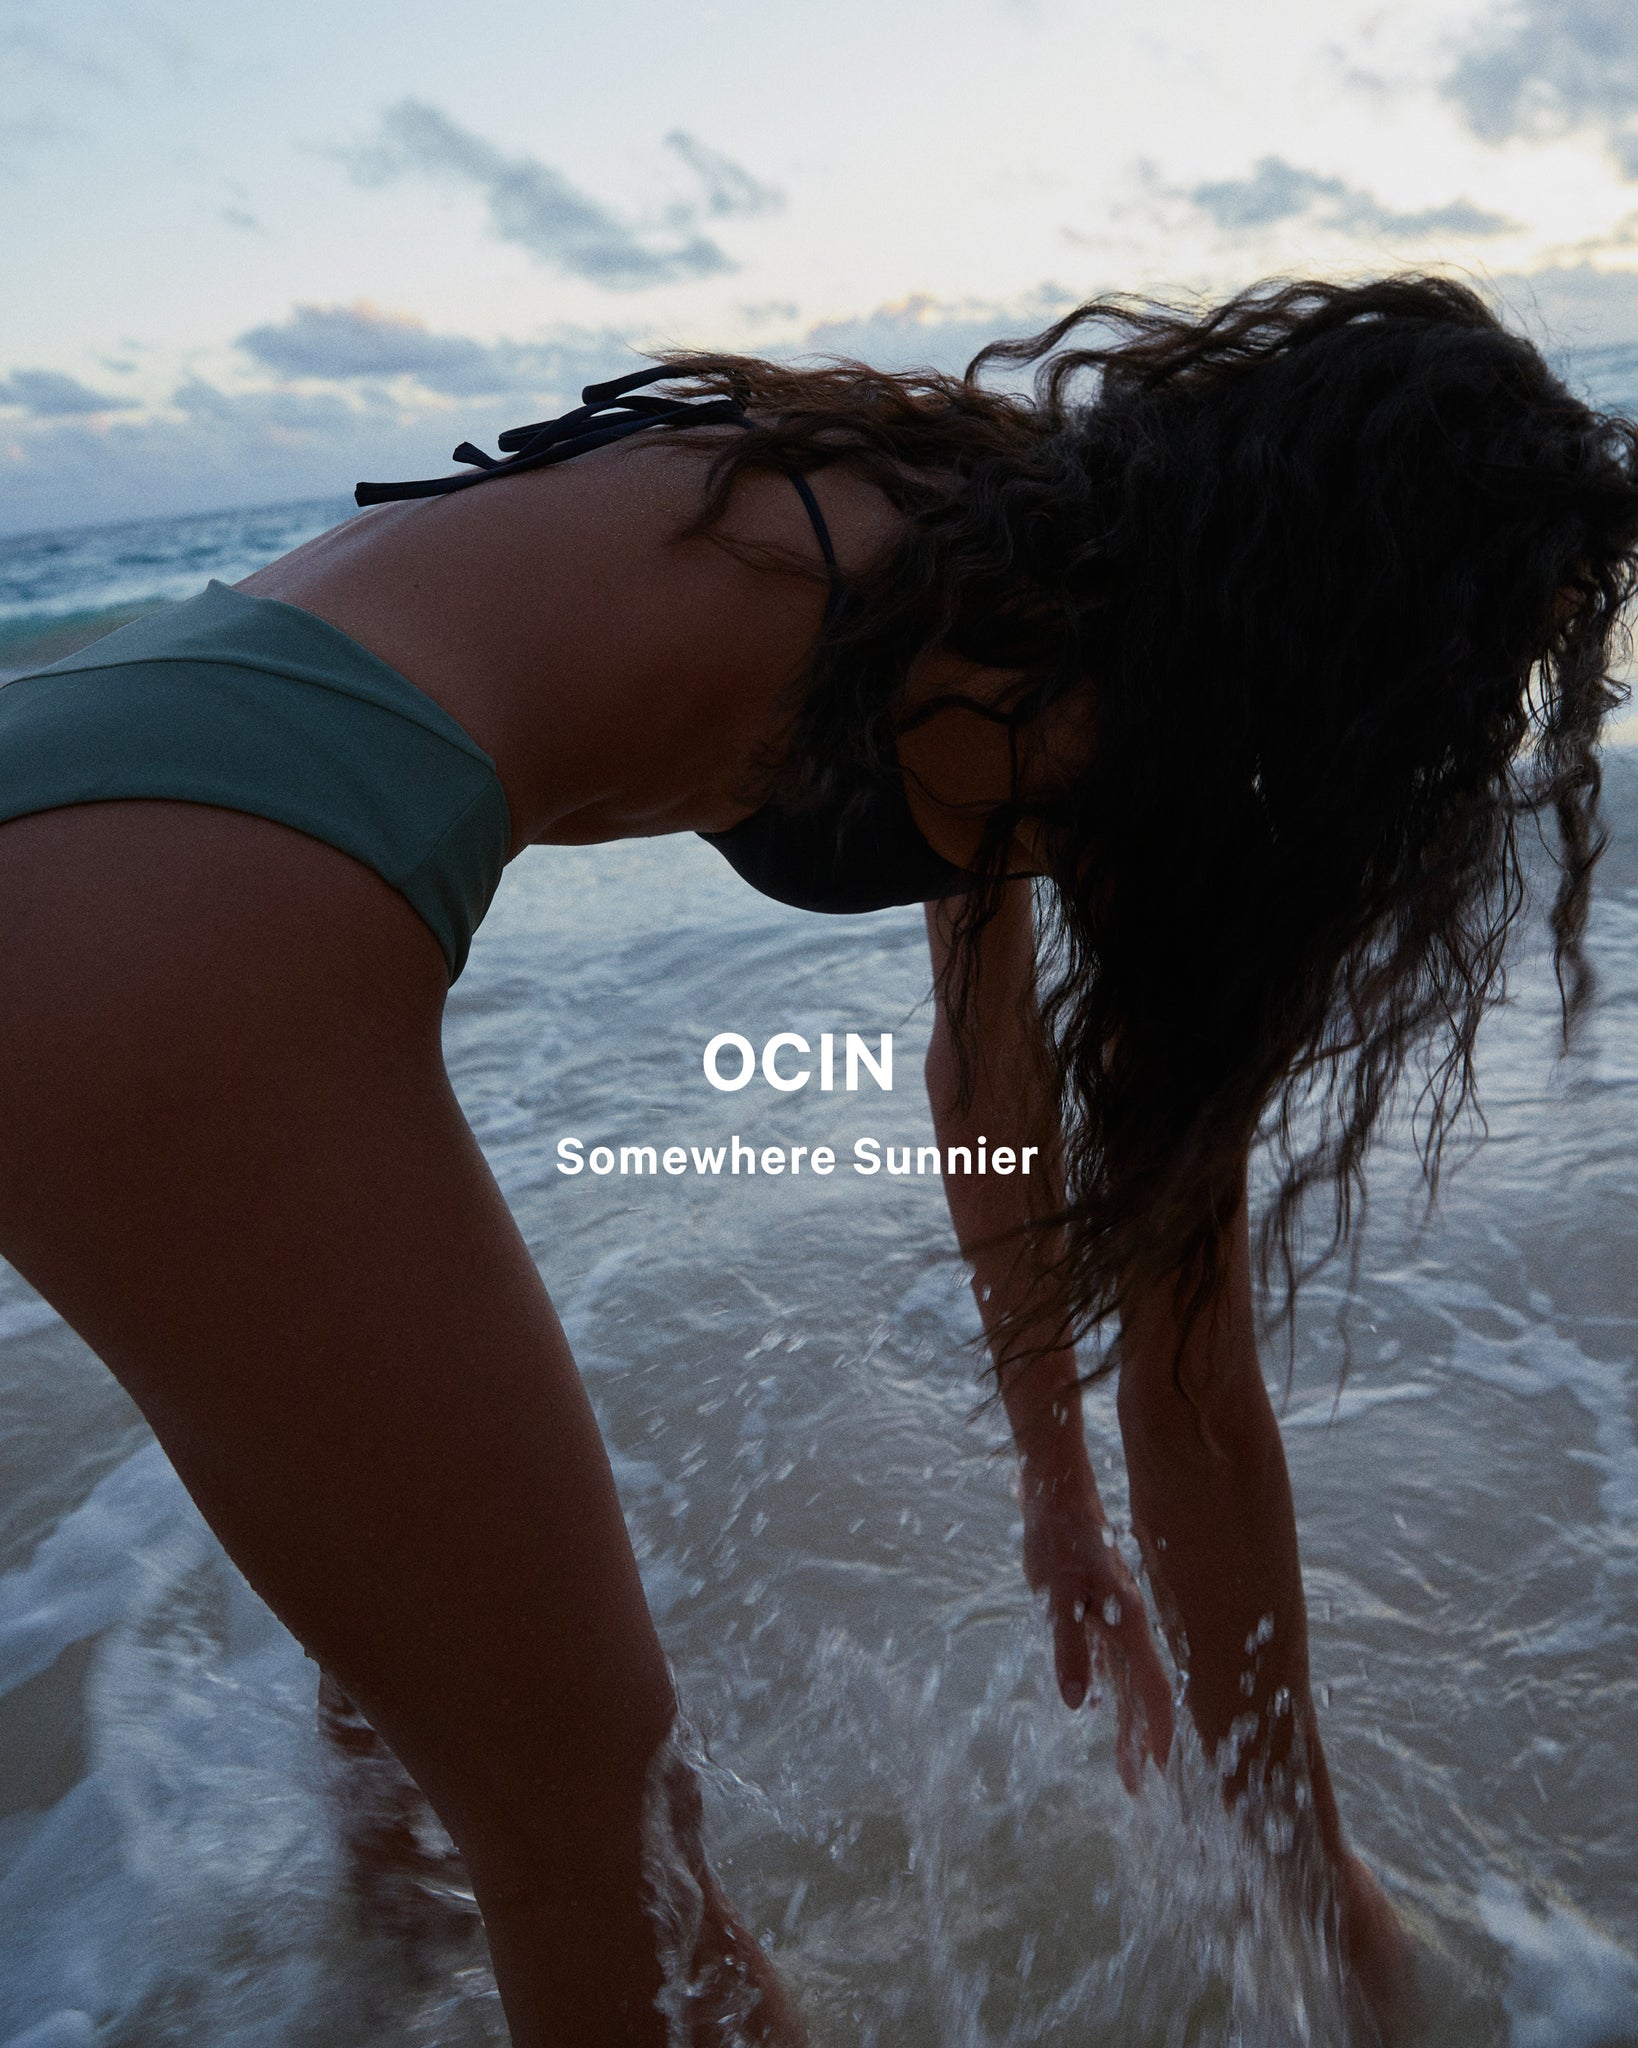 A summer pop up presented by OCIN: Somewhere Sunnier